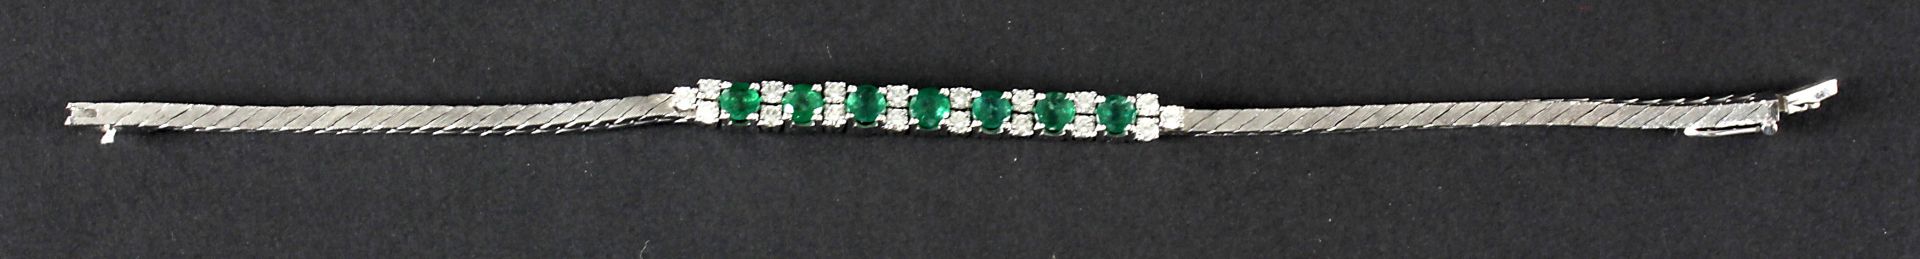 Schönes Armband mit Smaragden und Brillanten, 750er WG - Image 2 of 2